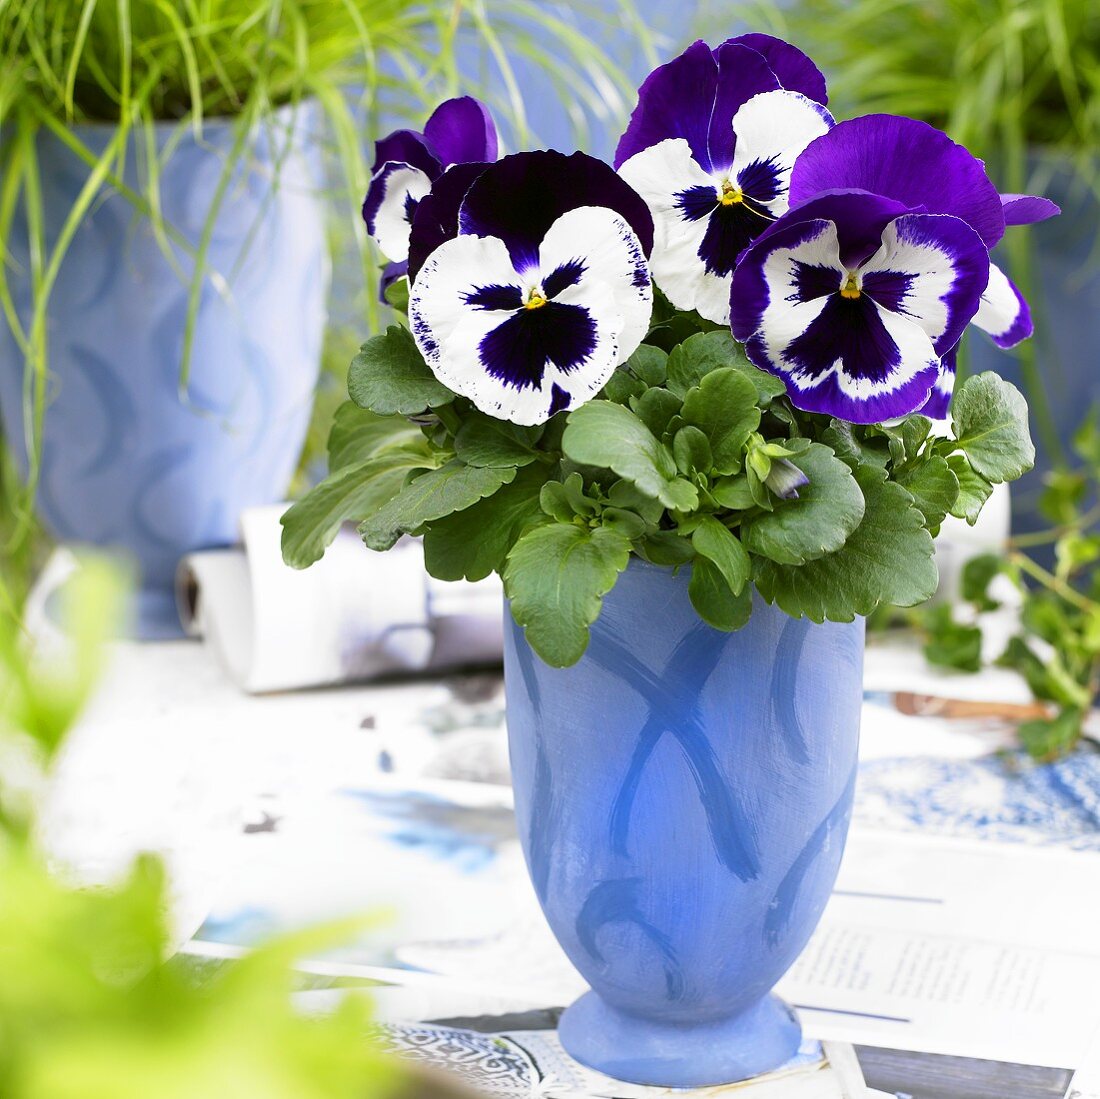 Stiefmütterchen 'Goliath Purple White' im blauen Blumentopf